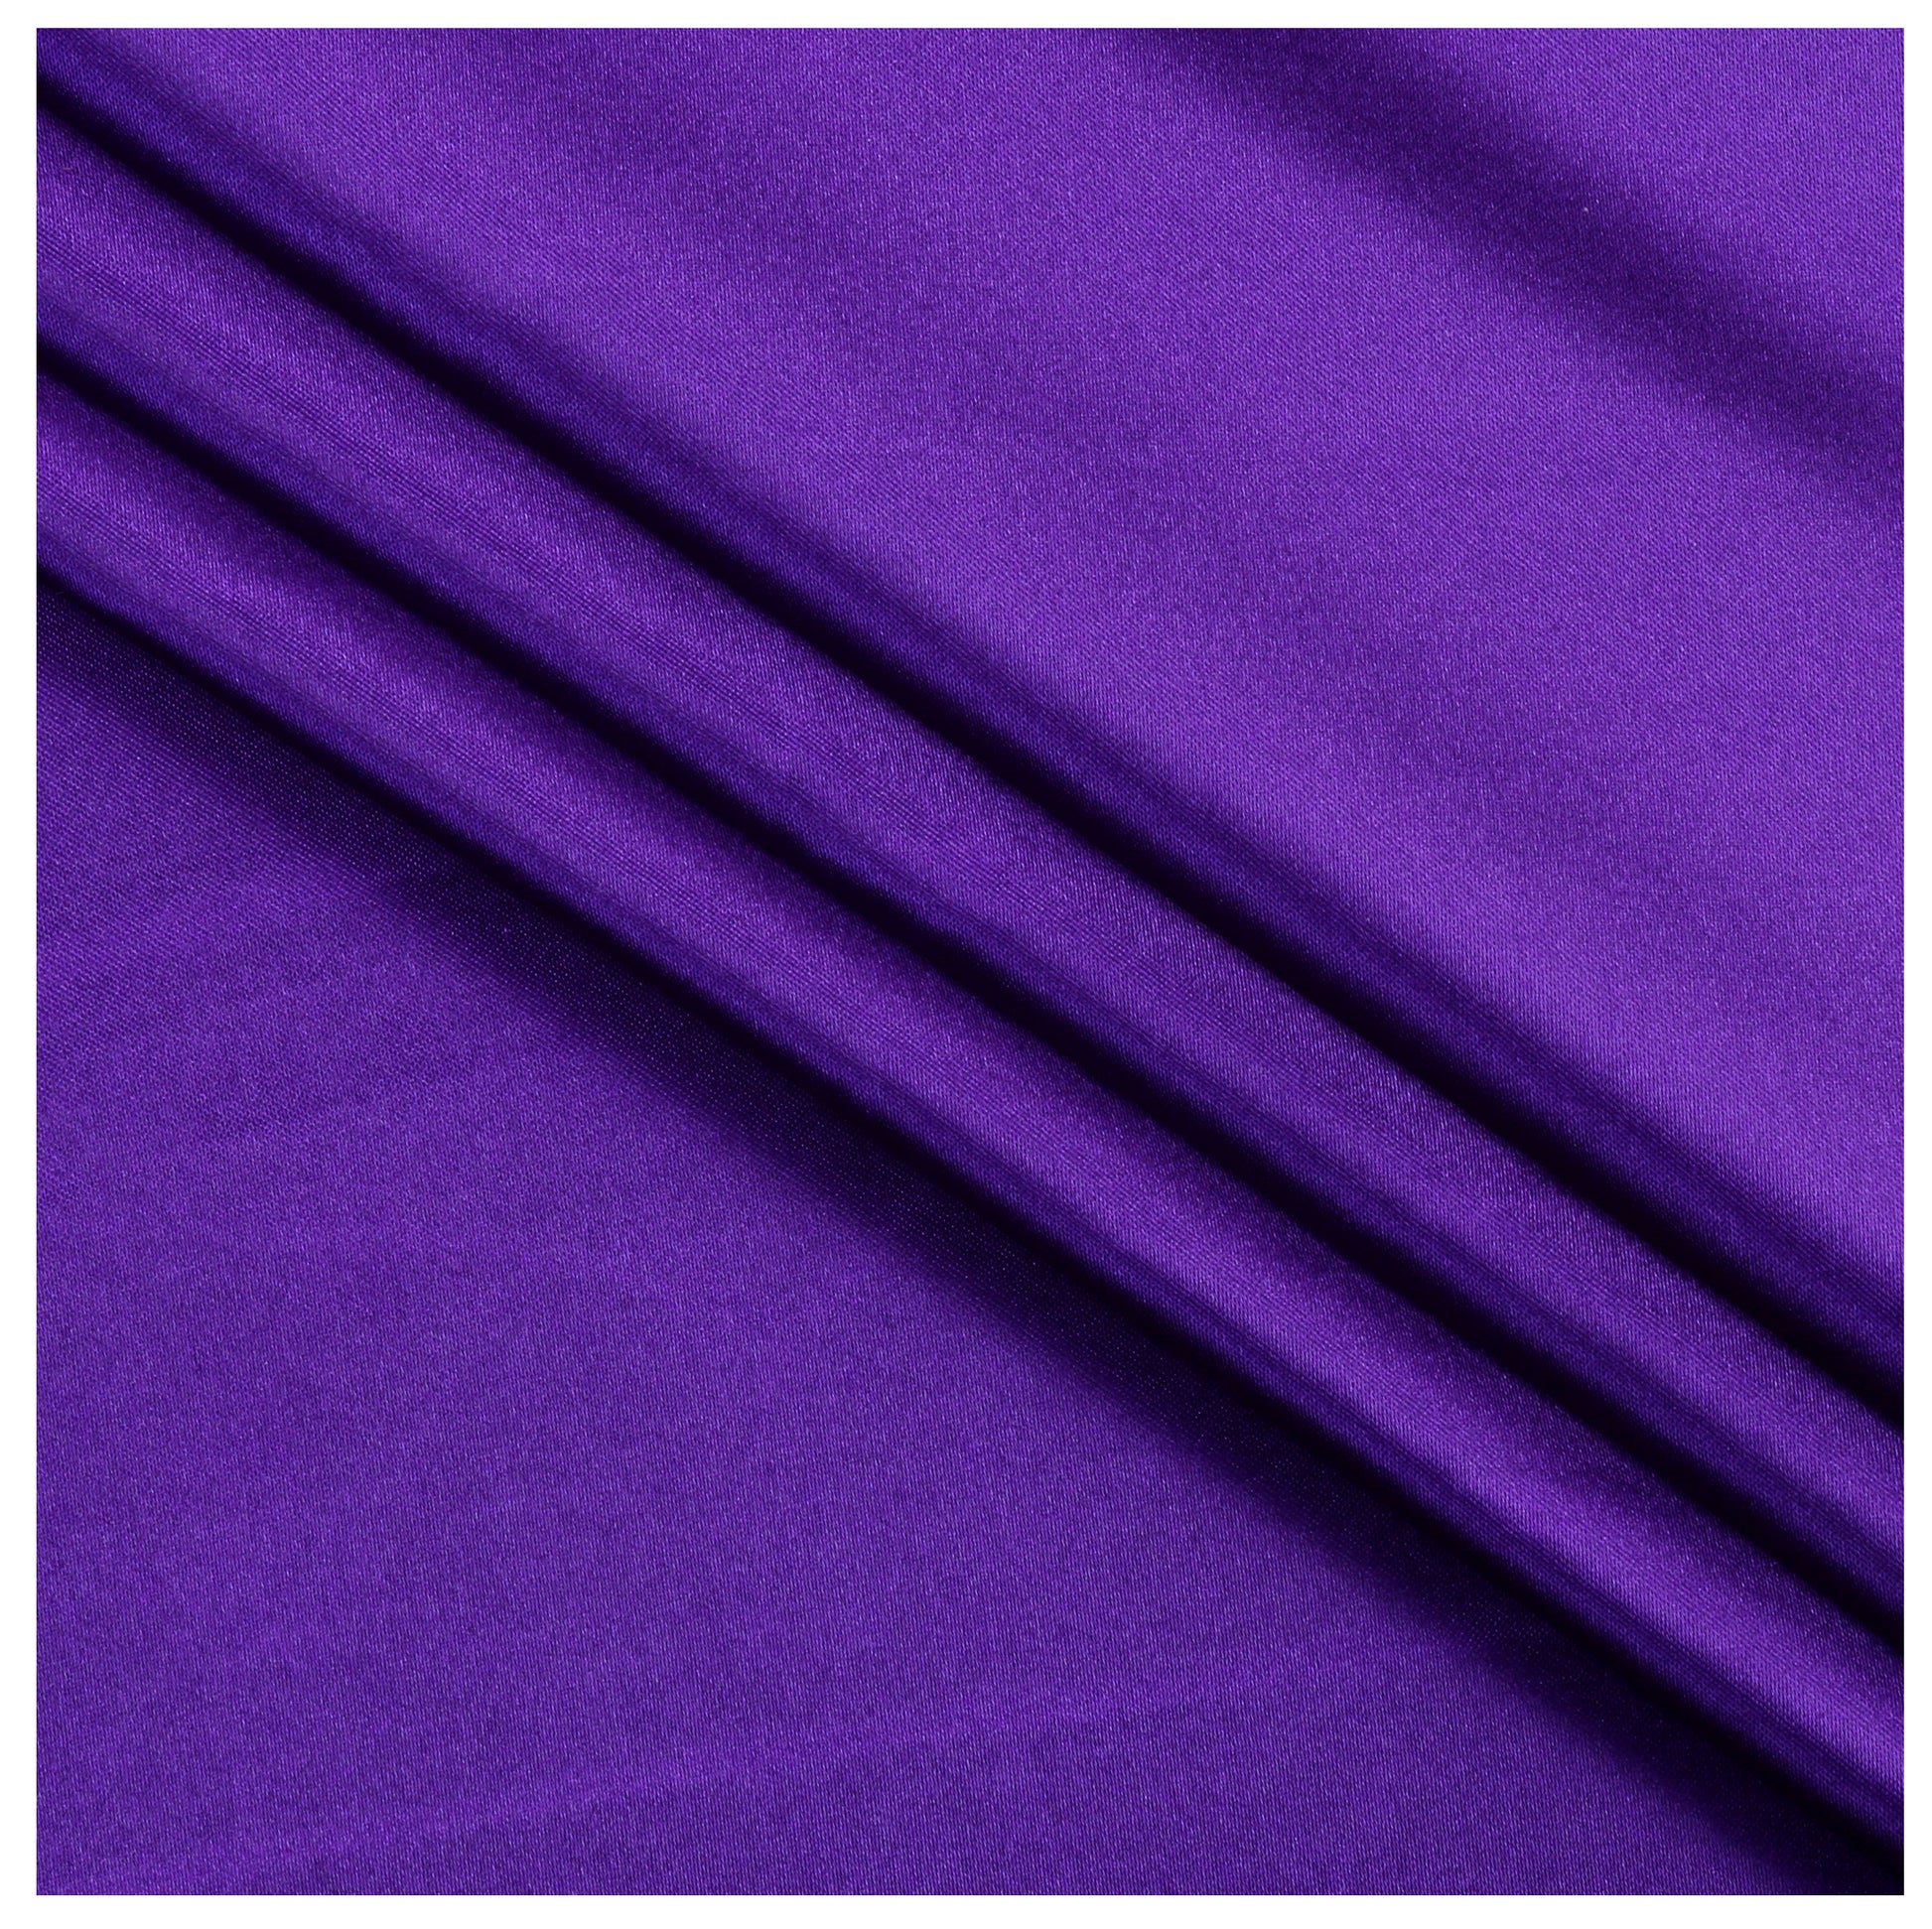 Cadbury Purple,aa1f119d-dad8-4531-89bb-f9ad1fd149b2